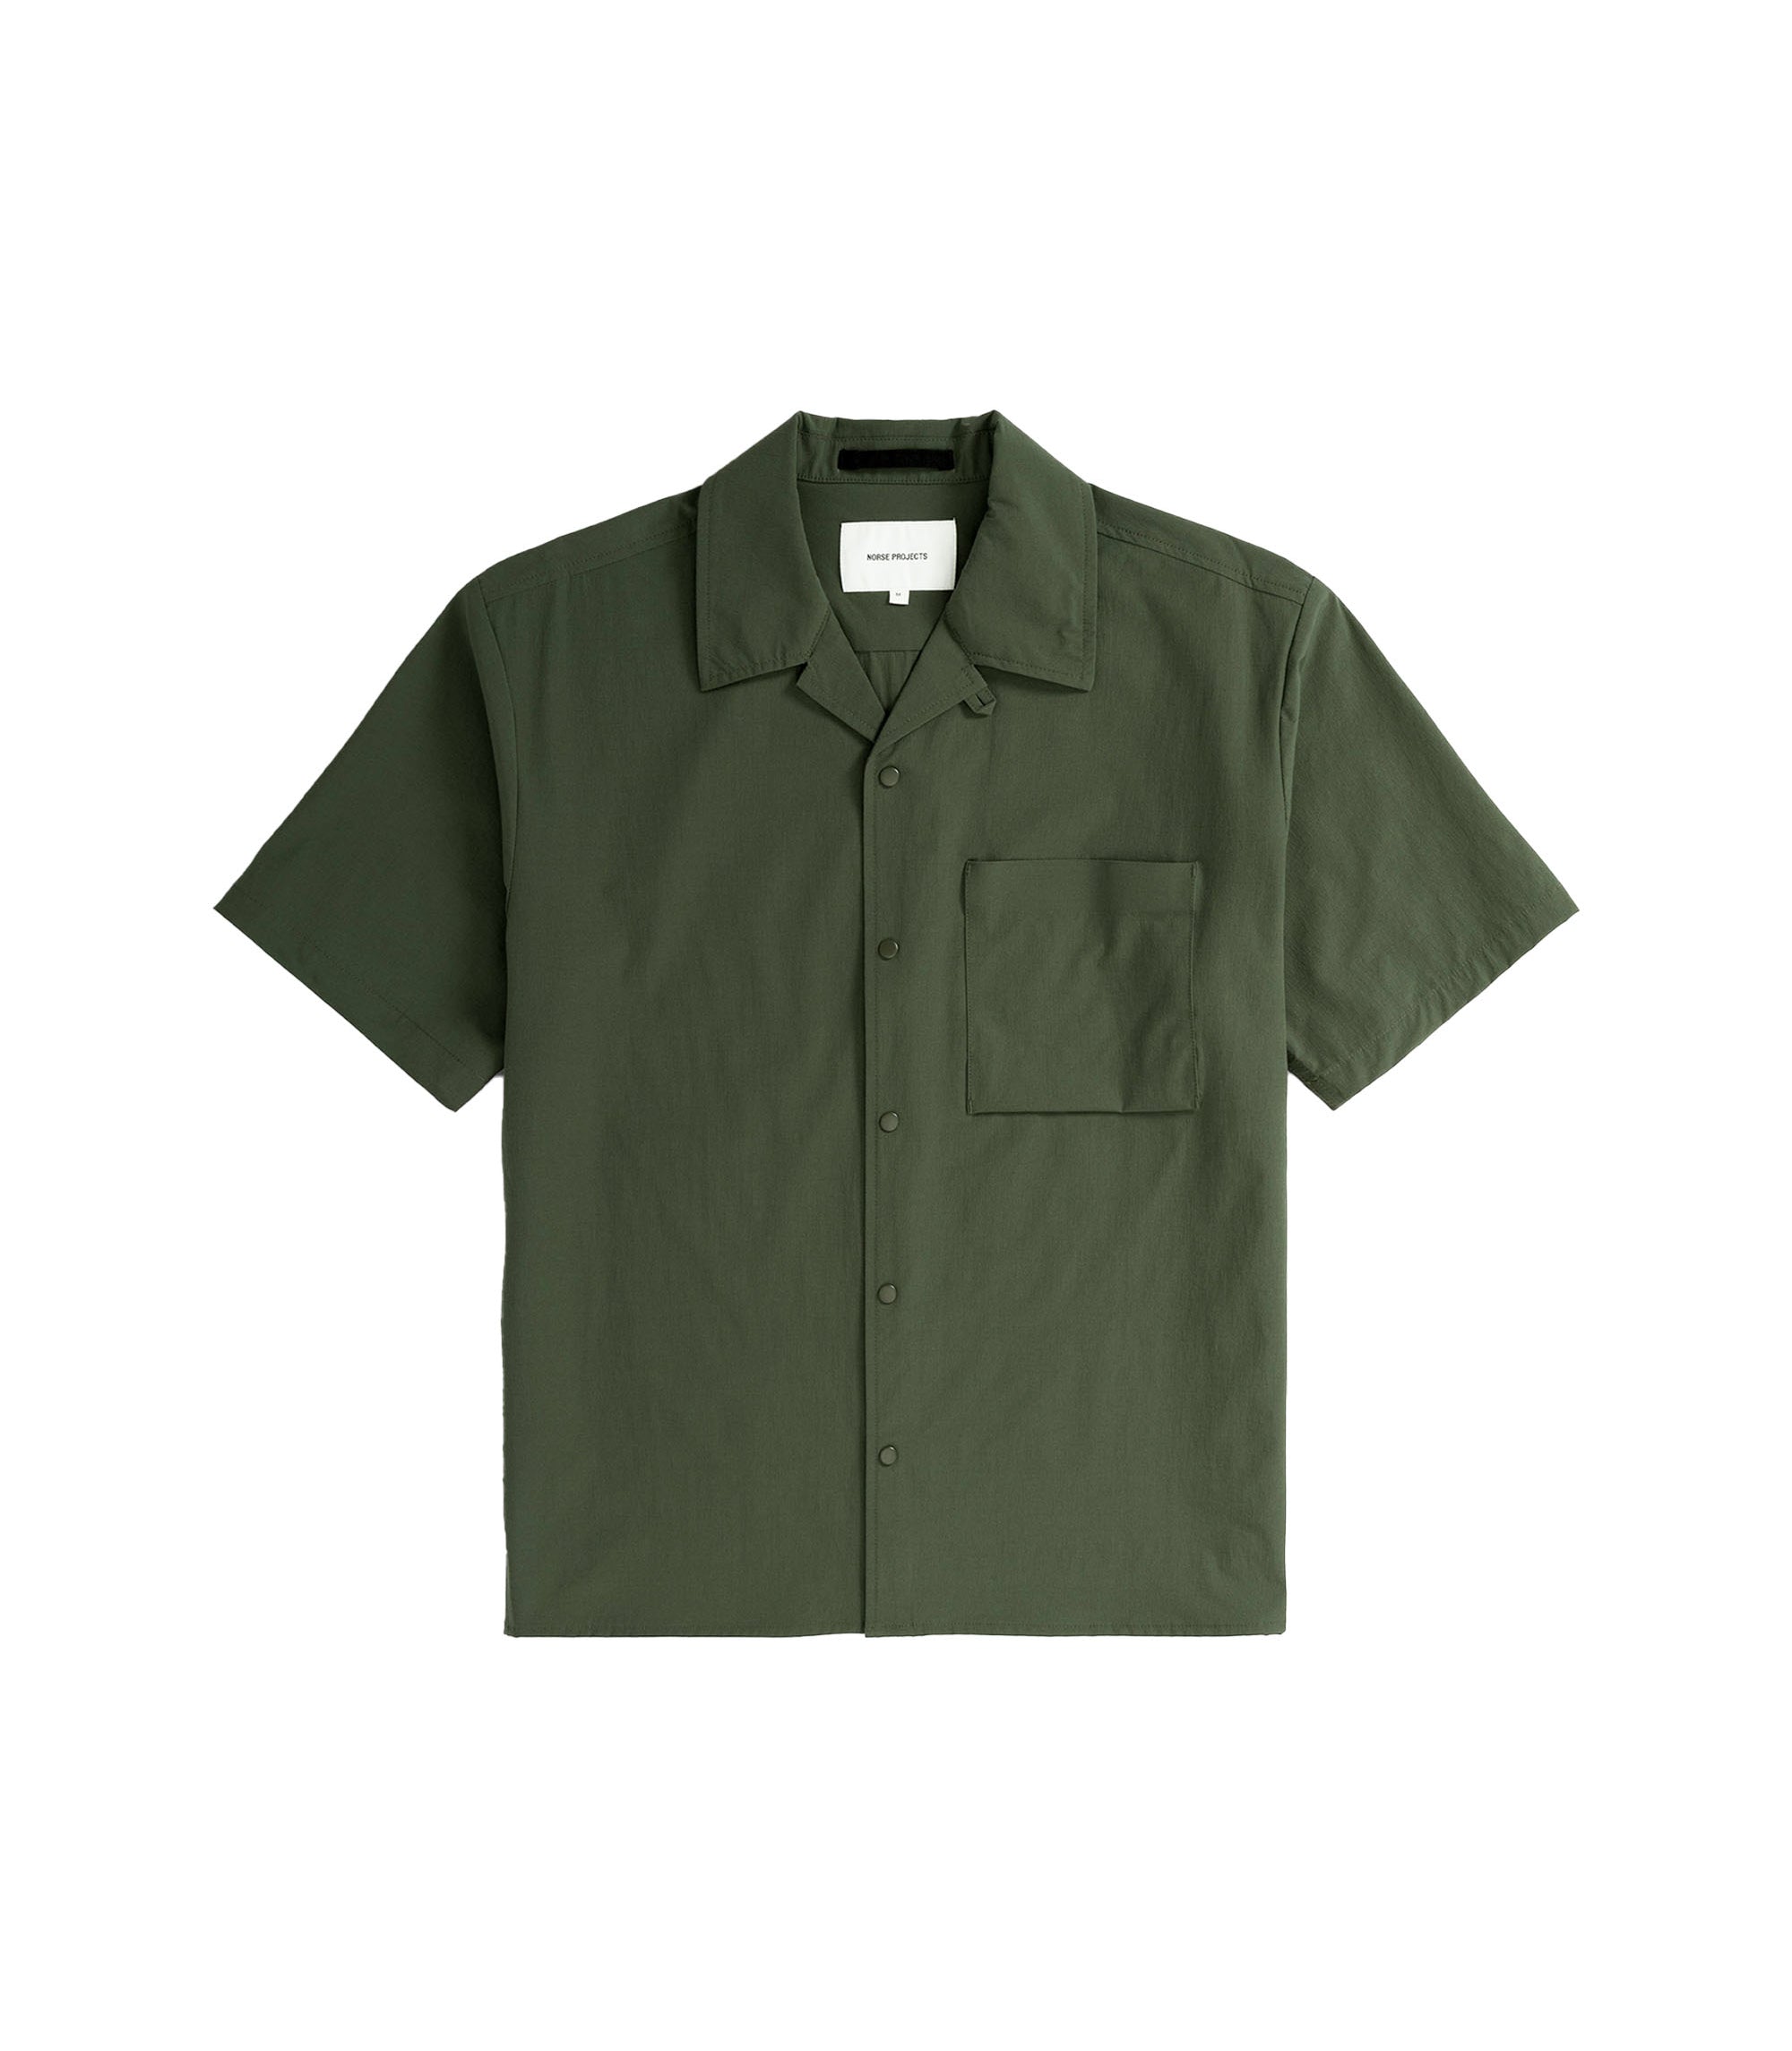 Carsten Travel Light S/S Shirt - Spruce Green